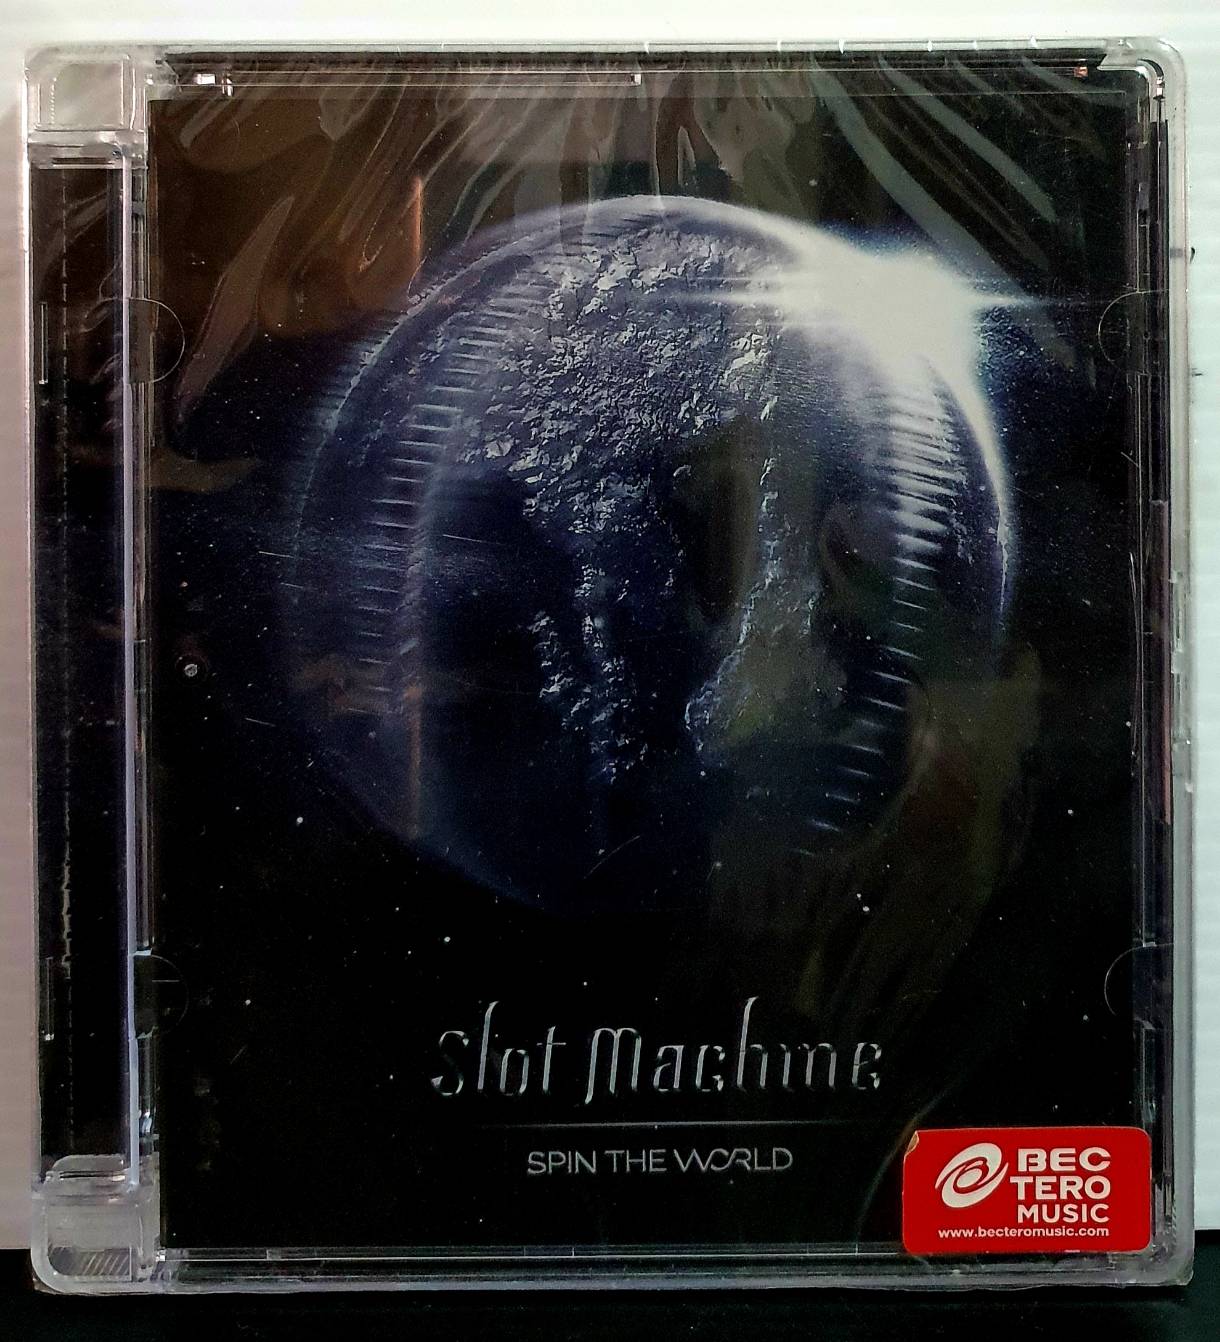 ซีดีเพลง CD SLOT MACHINE SPIN THE WORLD***สินค้ามือ1